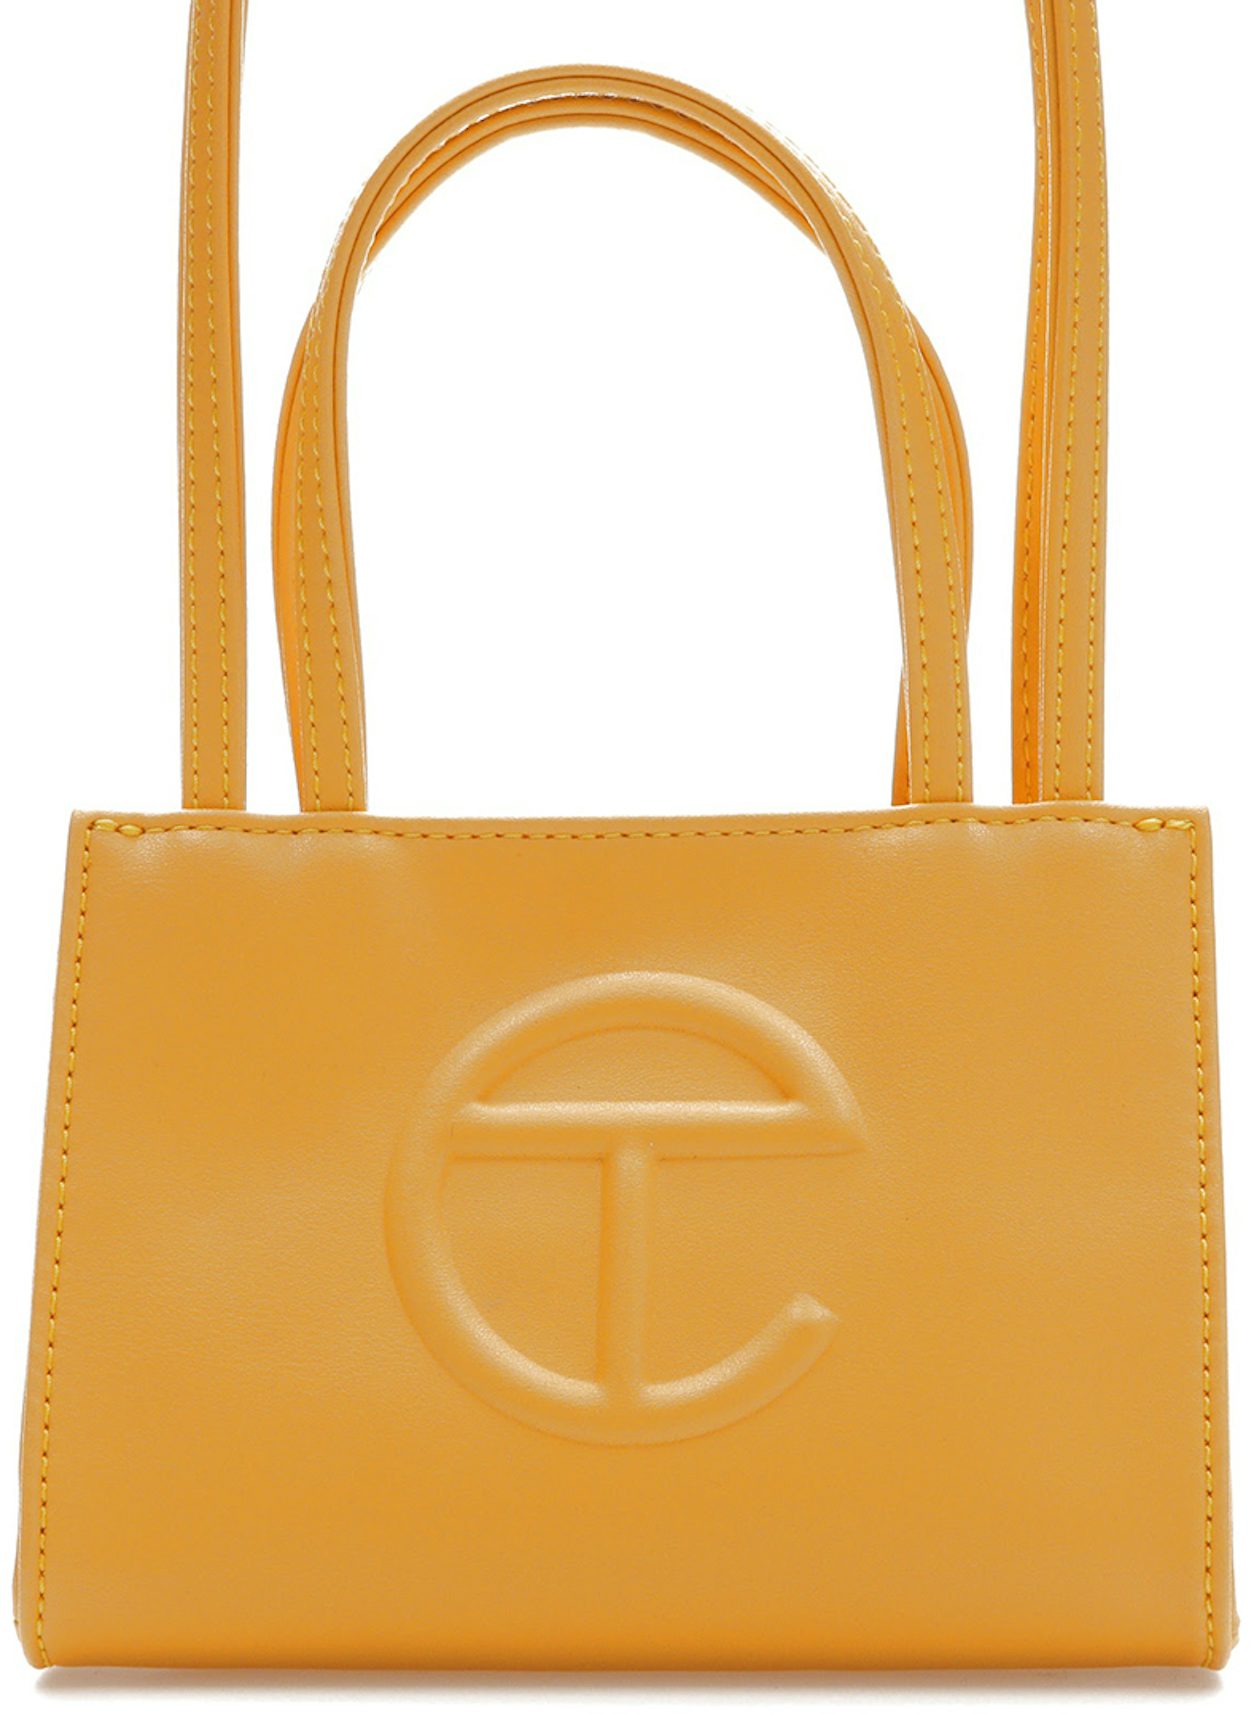 Telfar Small Shopping Bag w/ Tags - Orange Mini Bags, Handbags - WTELG25843